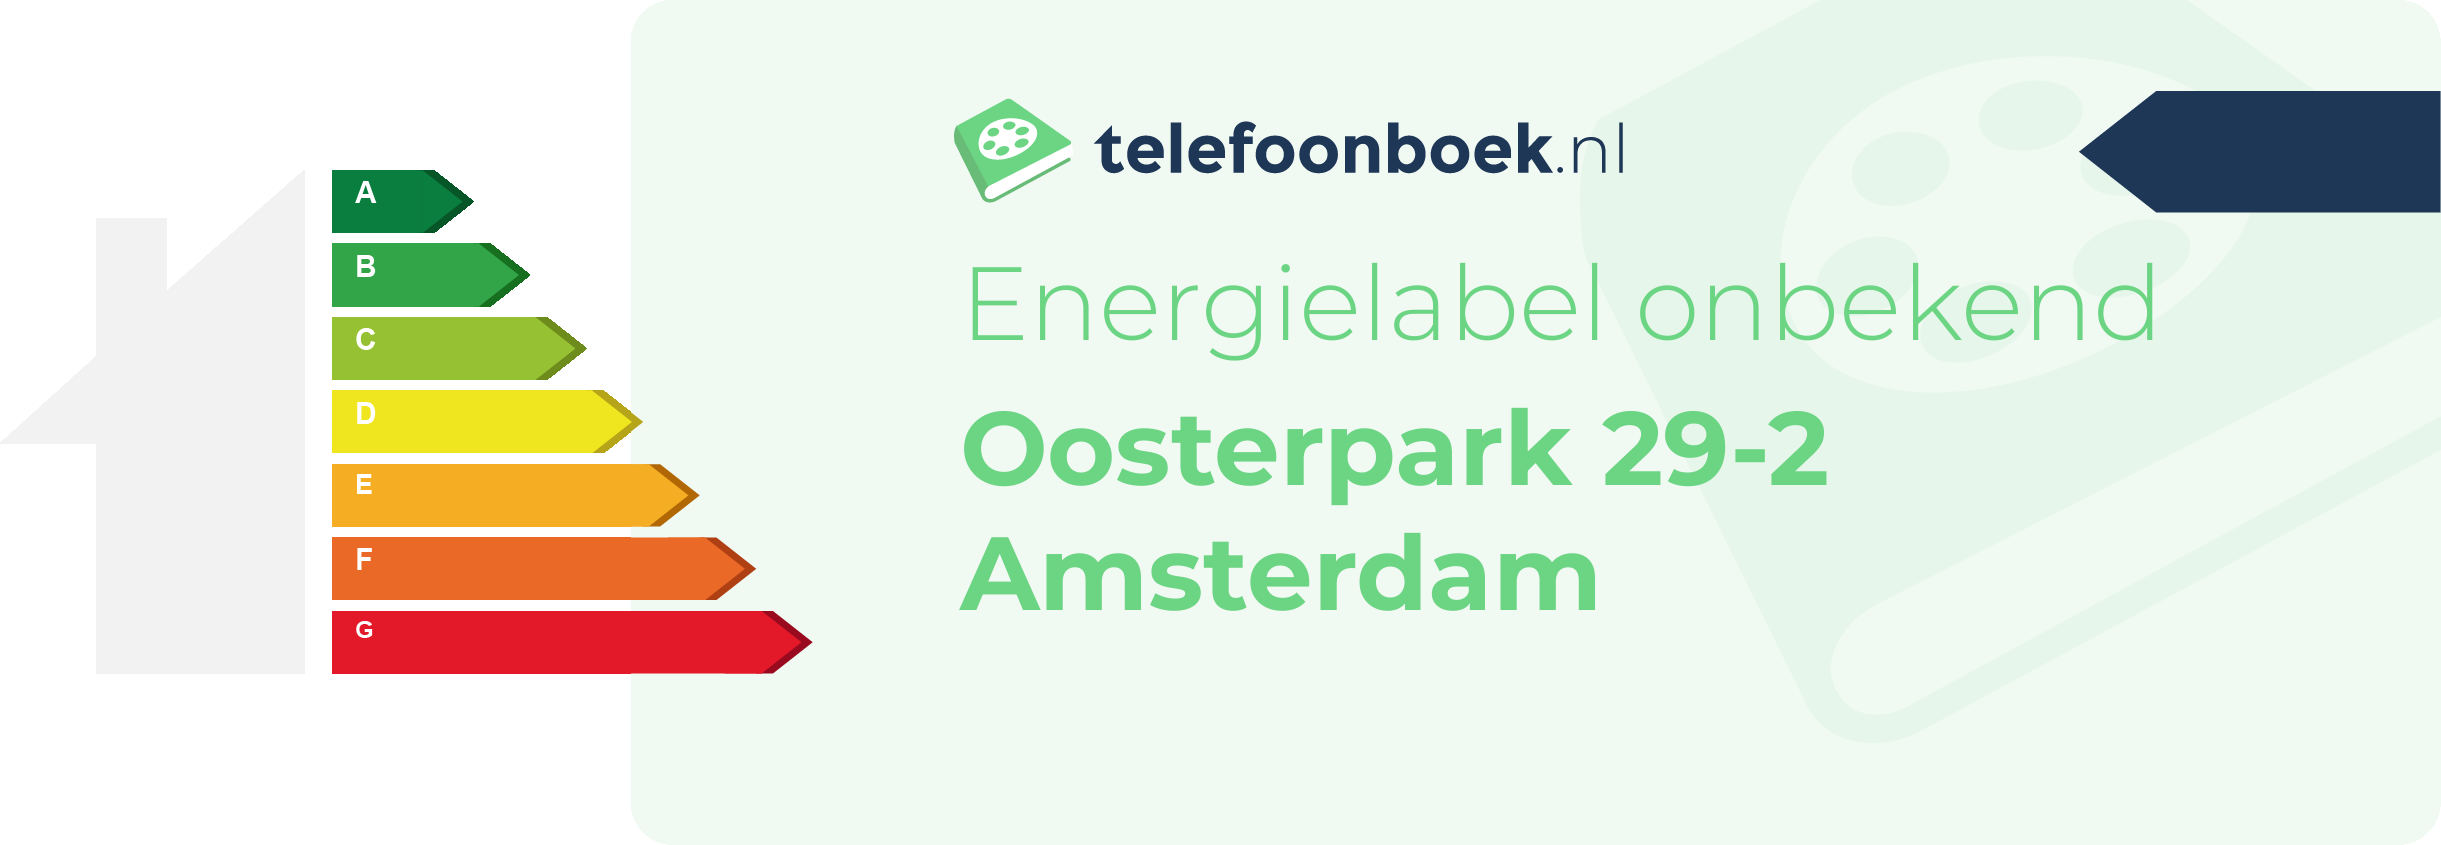 Energielabel Oosterpark 29-2 Amsterdam